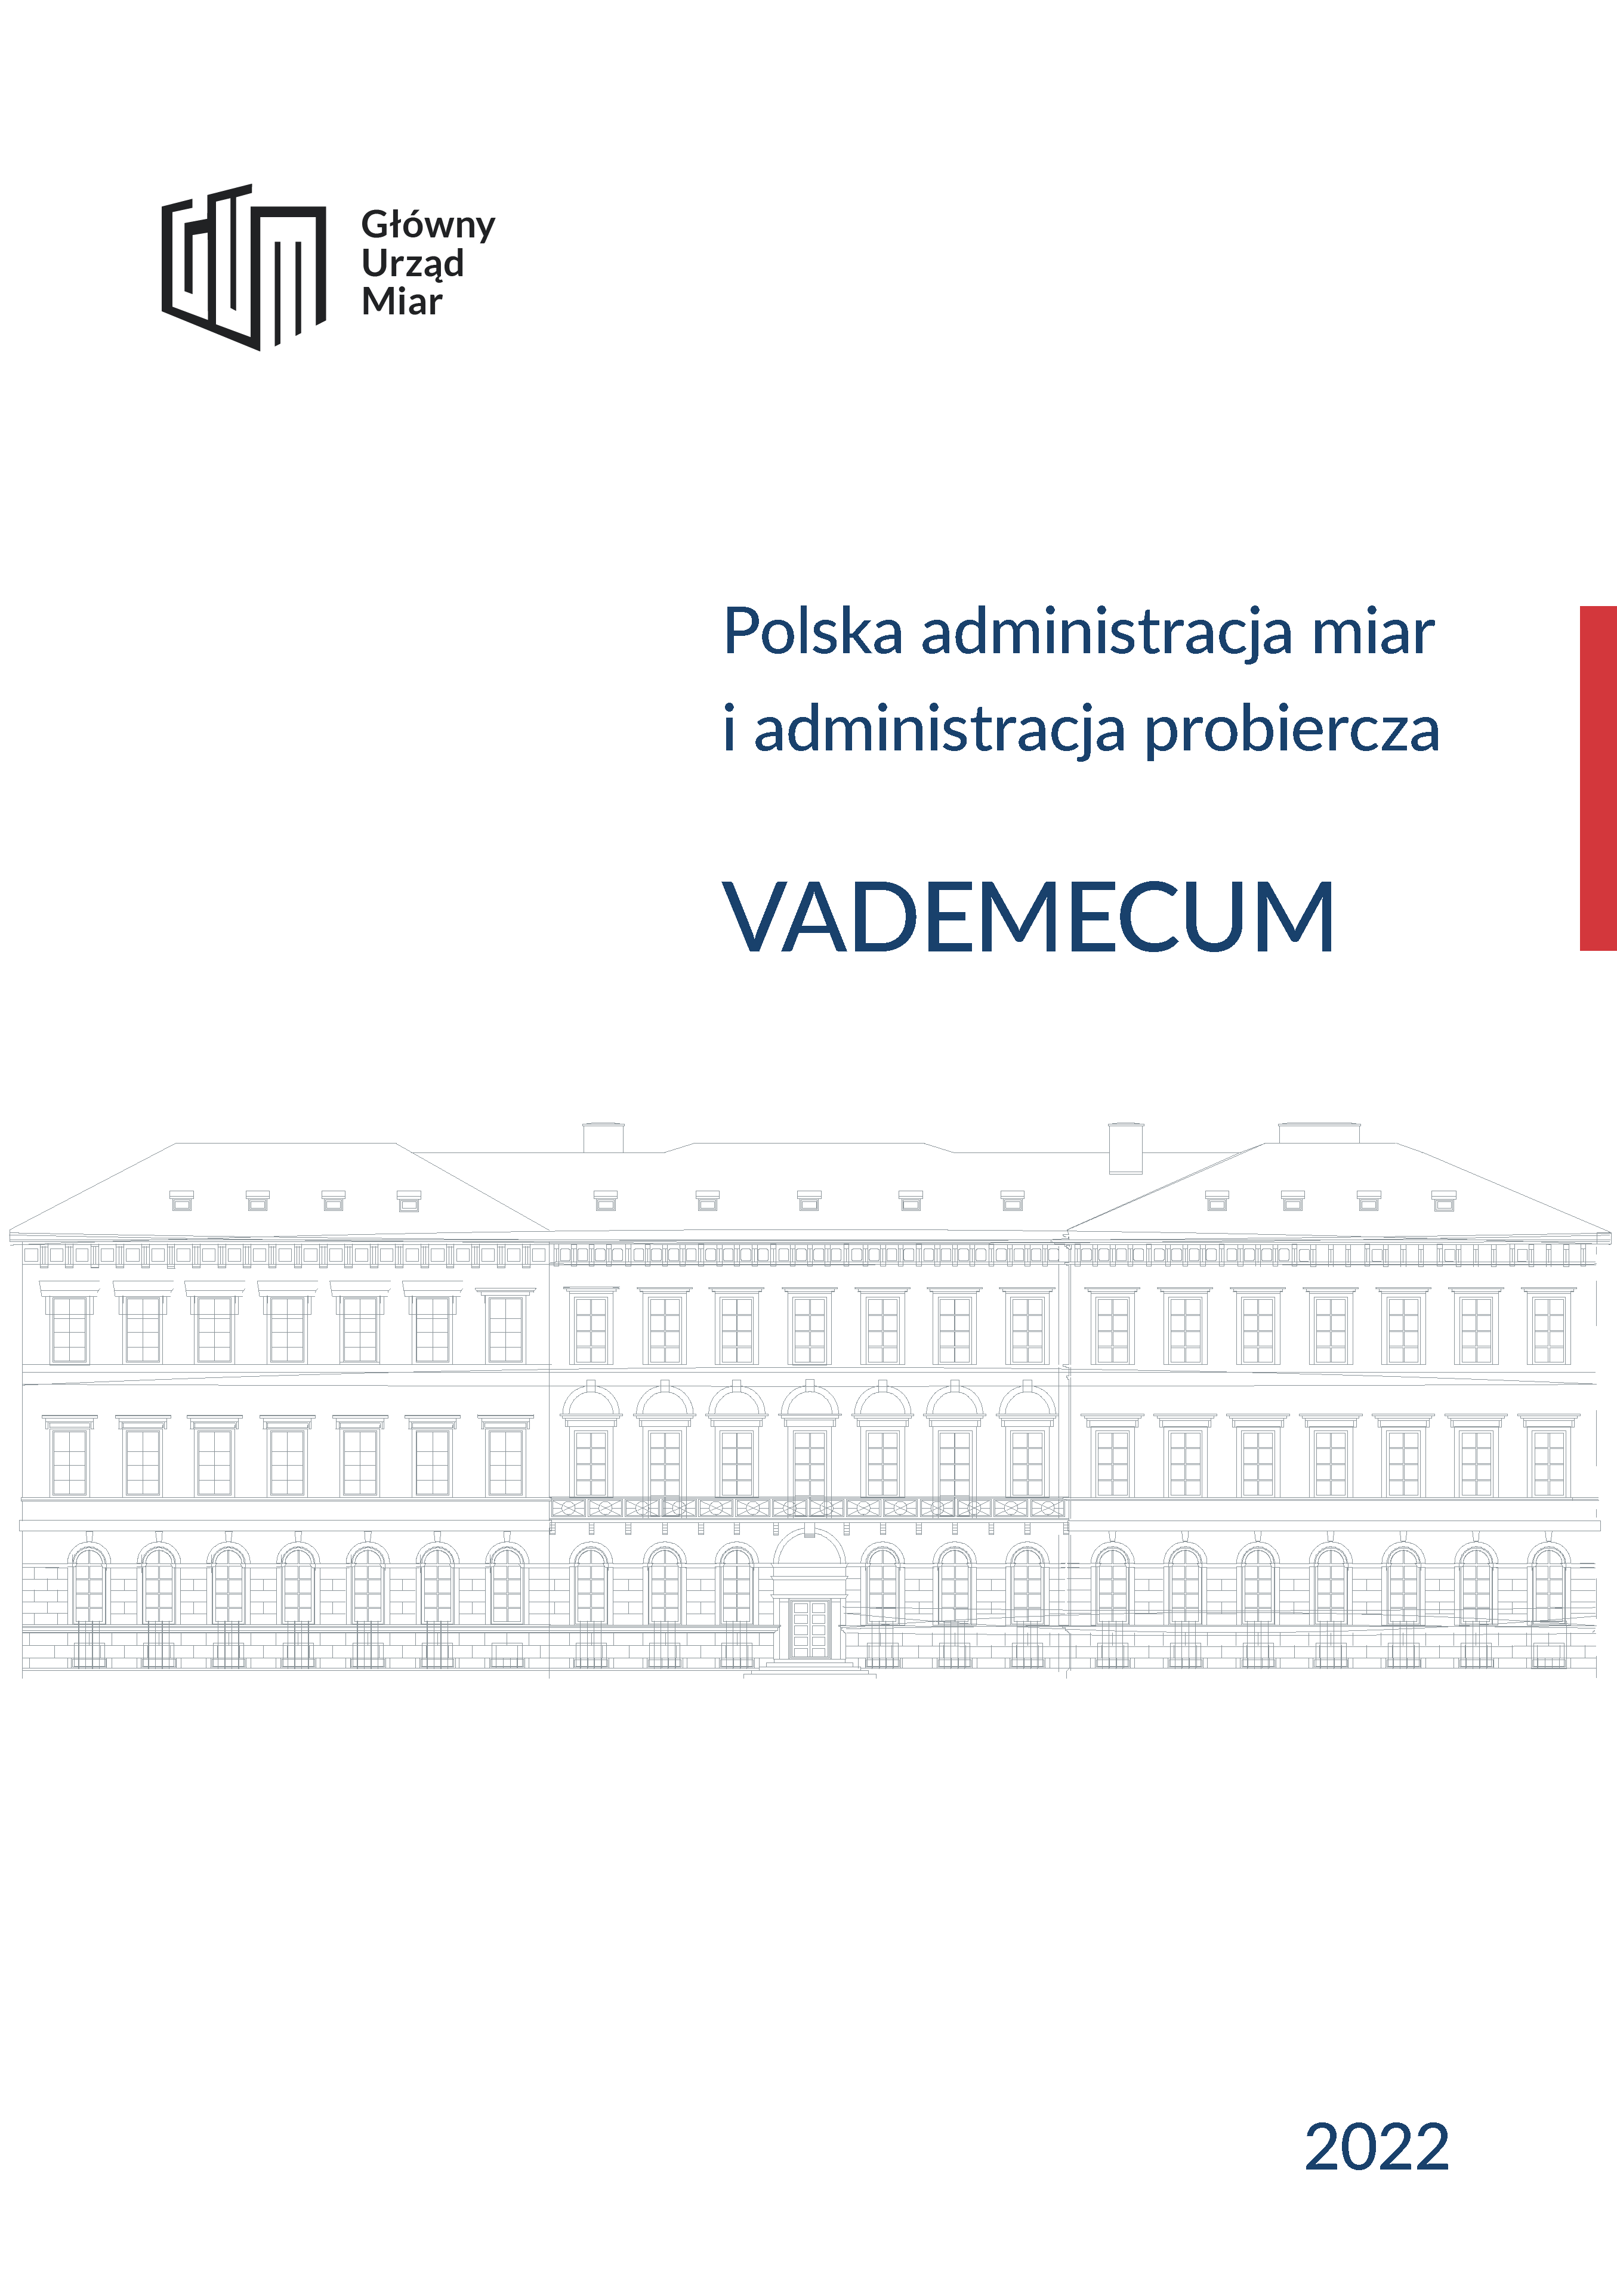 Okładka Vademecum 2022. Na białym tle grafika budynku Głównego Urzędu Miar, poza tym tytuł, data wydania, logo GUM.